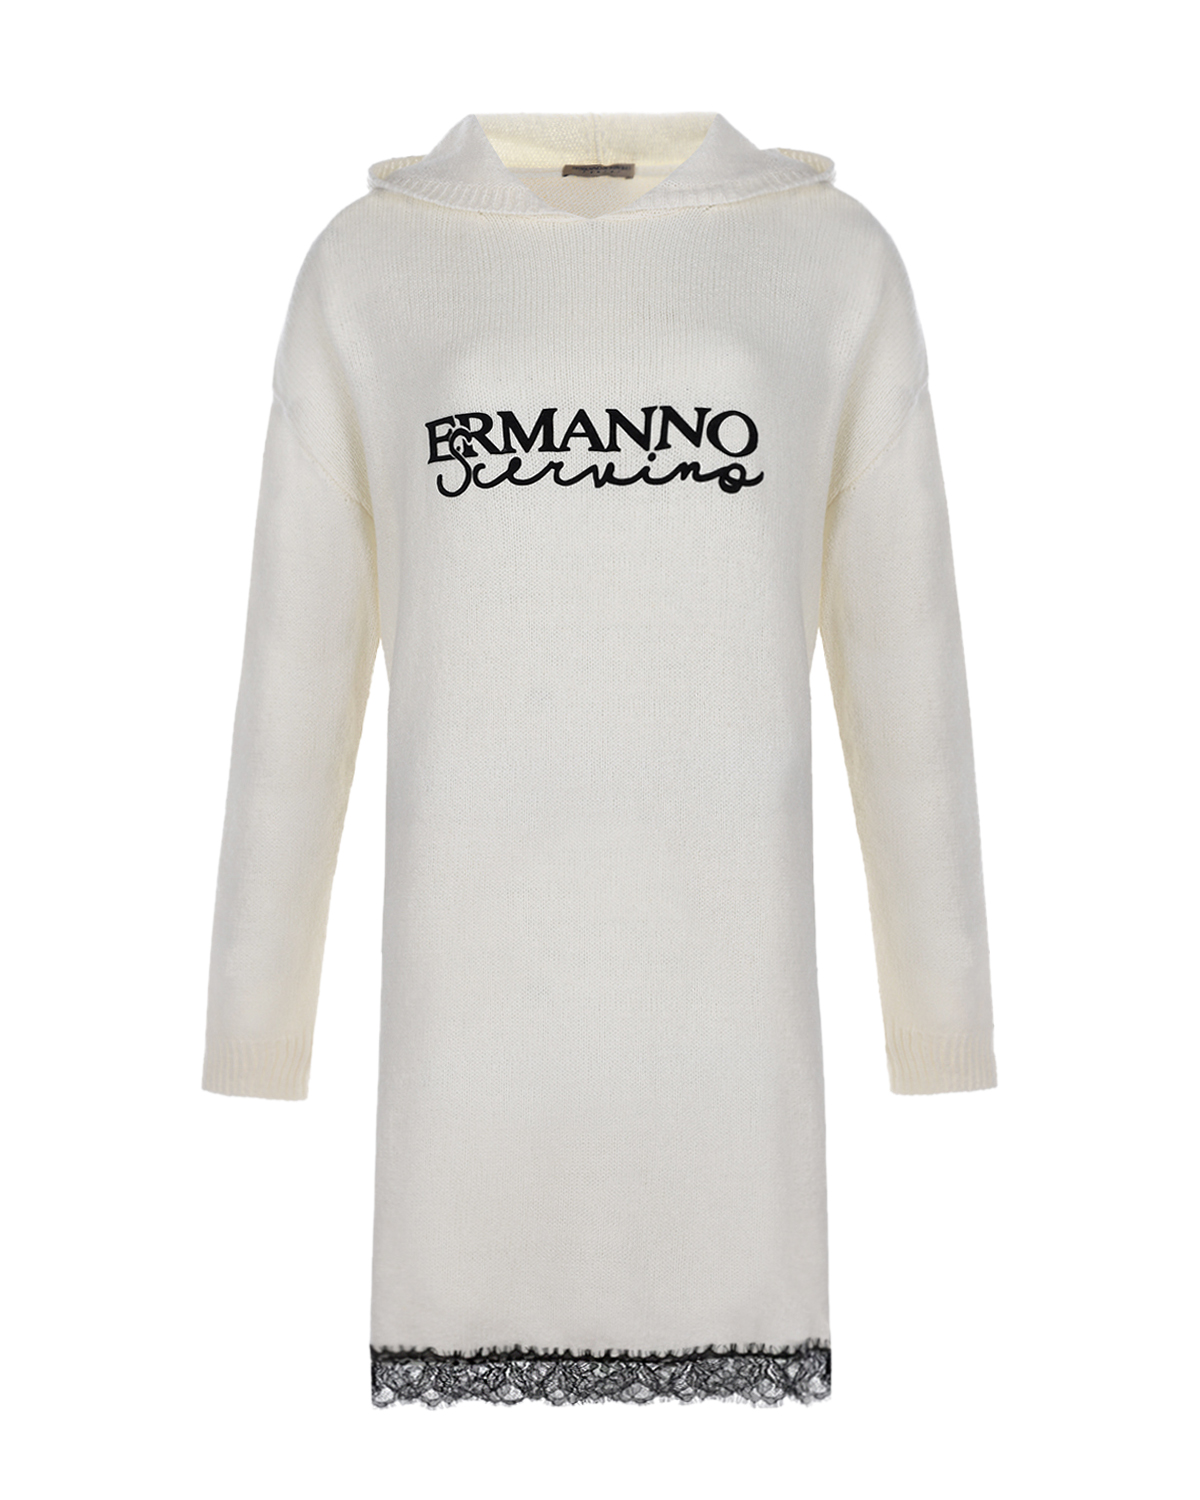 Платье-толстовка с кружевной отделкой Ermanno Scervino детское, размер 128, цвет белый - фото 1